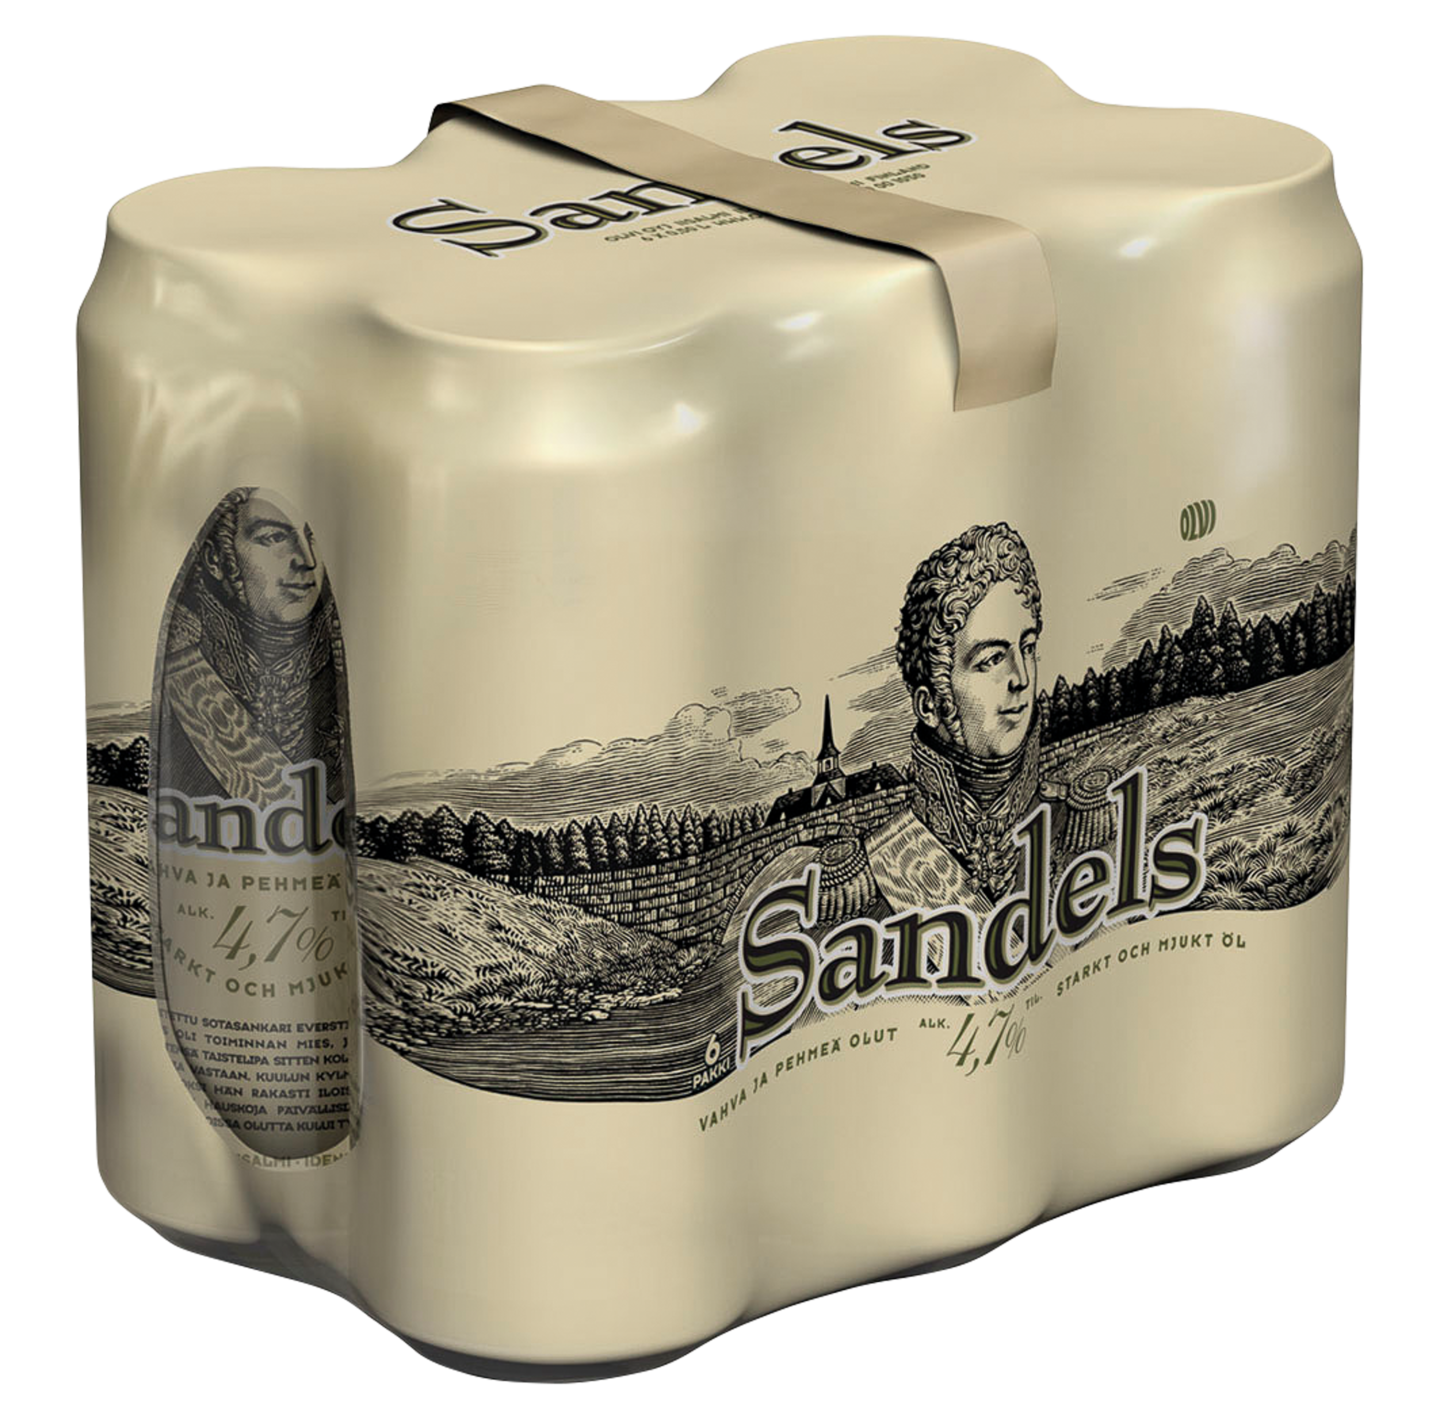 Sandels 4,7 % 0,5l tlk 6-pack